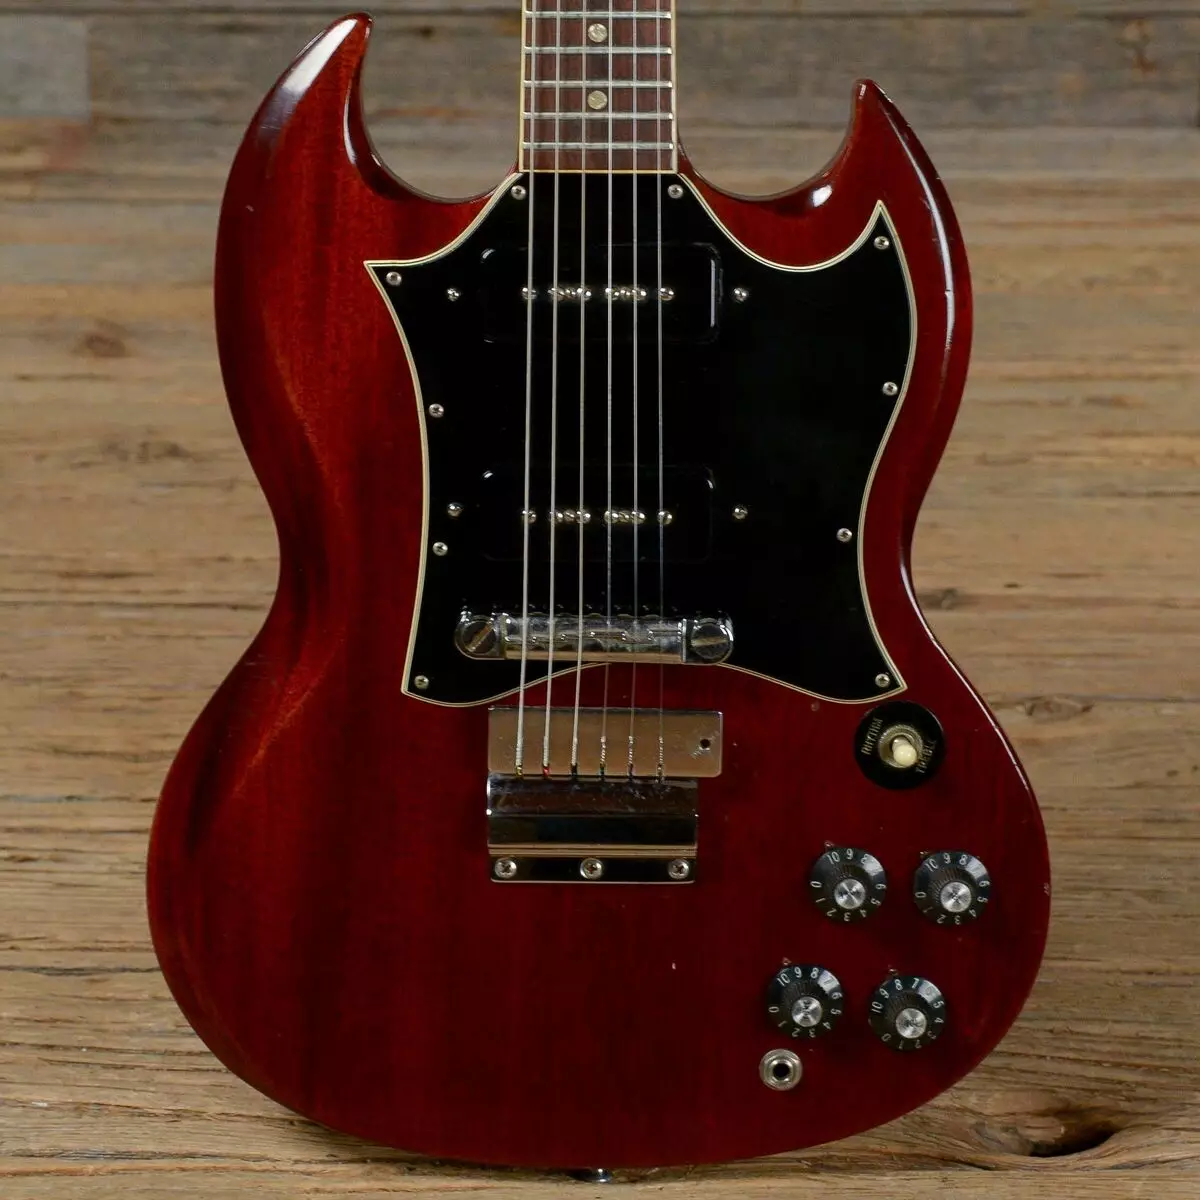 סוגים של גיטרה חשמלית: צורות של hulls, סוגים של גיטרות מודרניות זנים של מודלים היסטוריים עם שמותיהם. טיפים לבחירת גיטרות חשמליות 26272_17